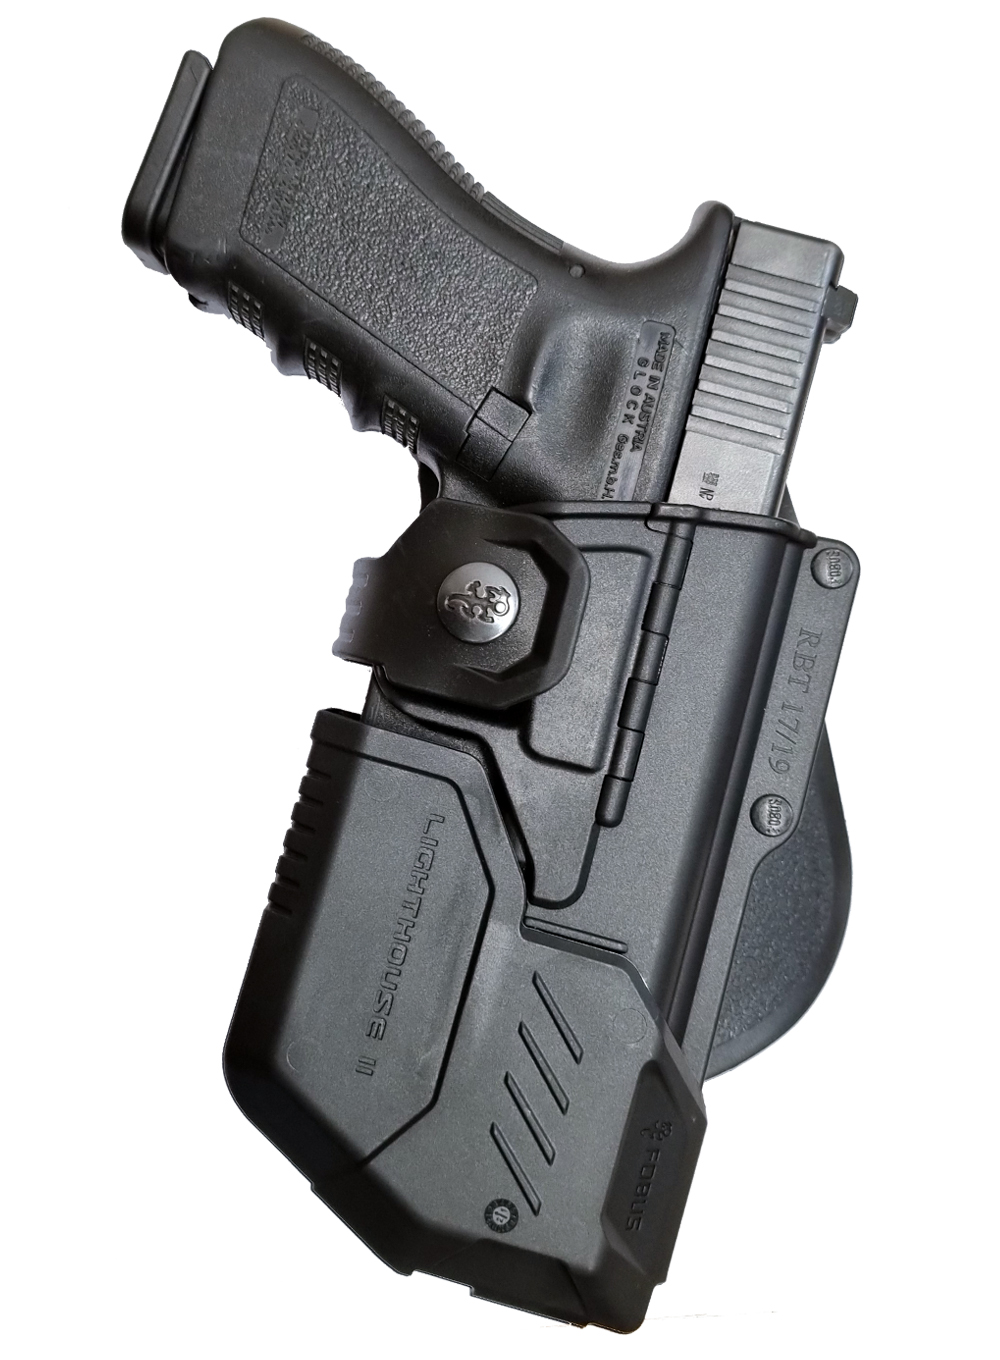 New Fobus Glock 17 Tactical Light Laser Bearing Belt RBT17 Holster UK Seller 